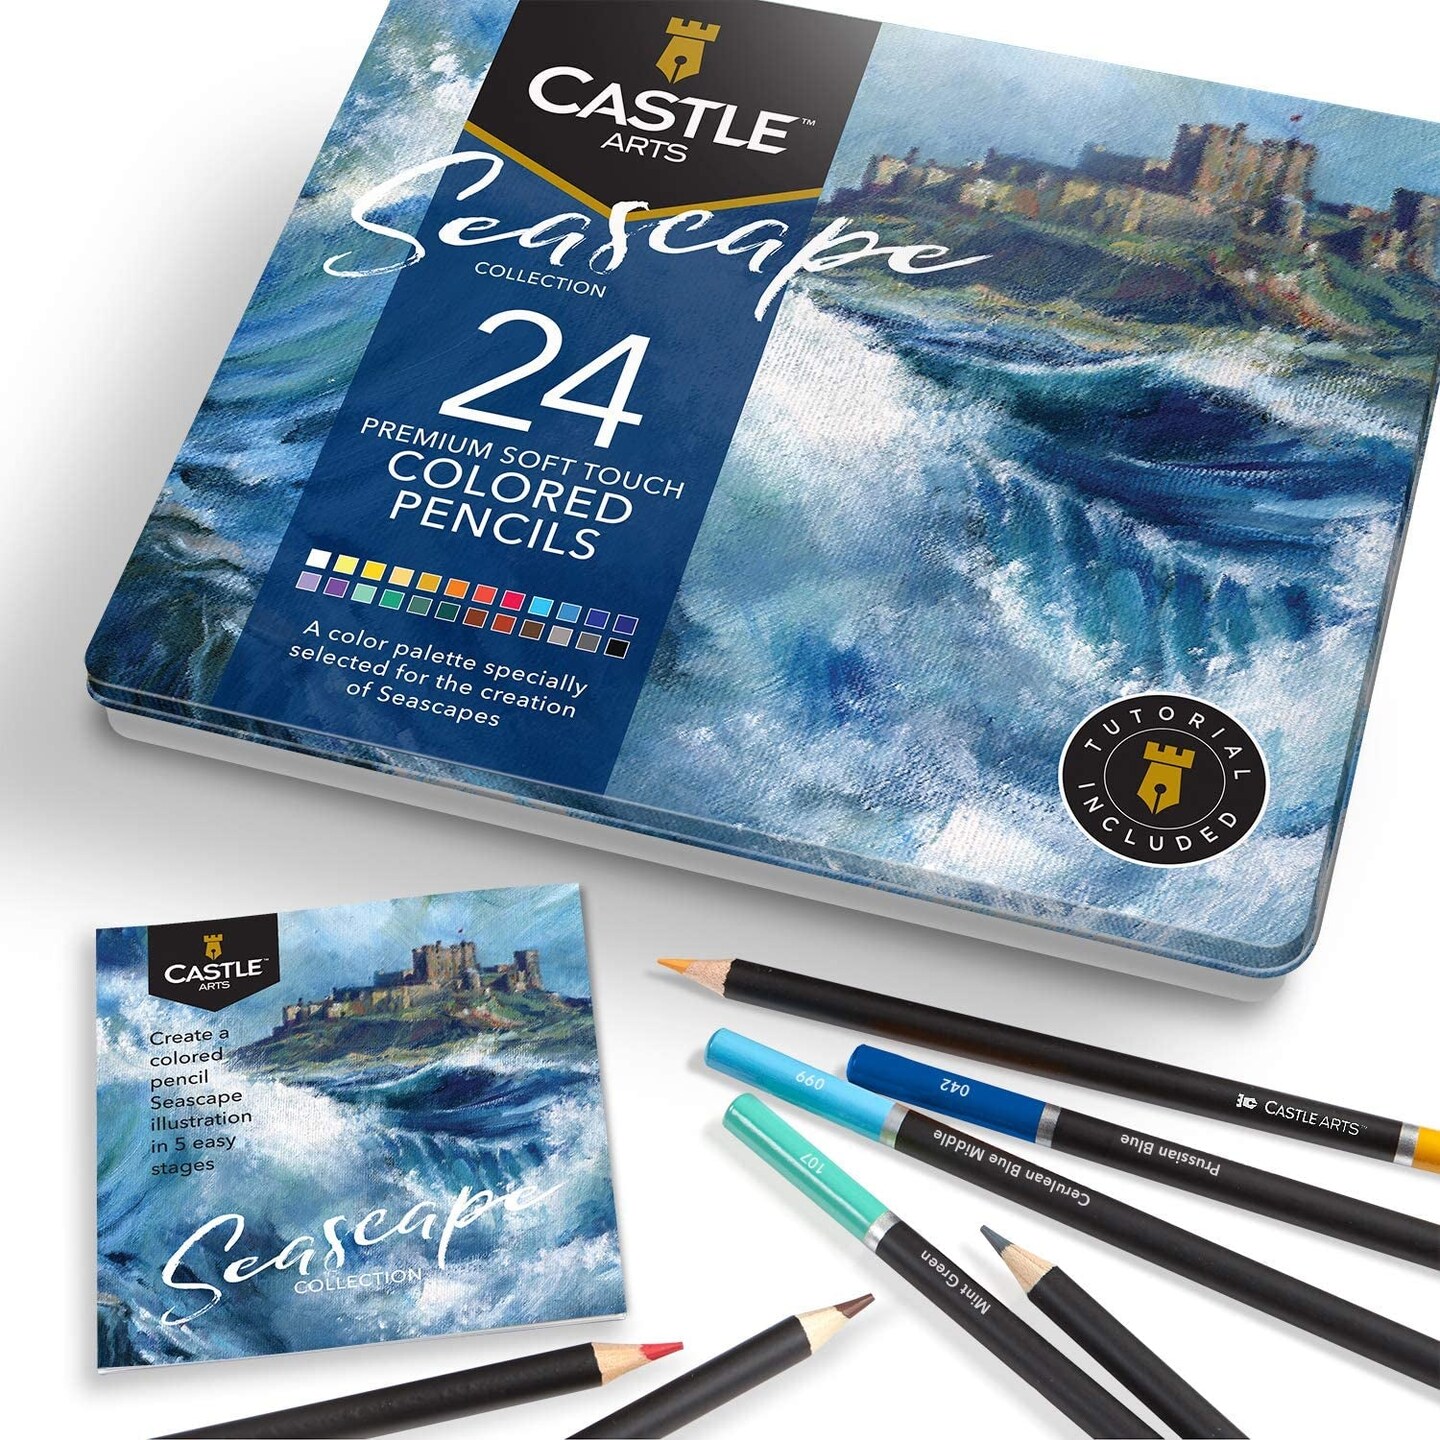 Castle Art Supplies Floral/Botanical Themed Watercolor Pencils Set